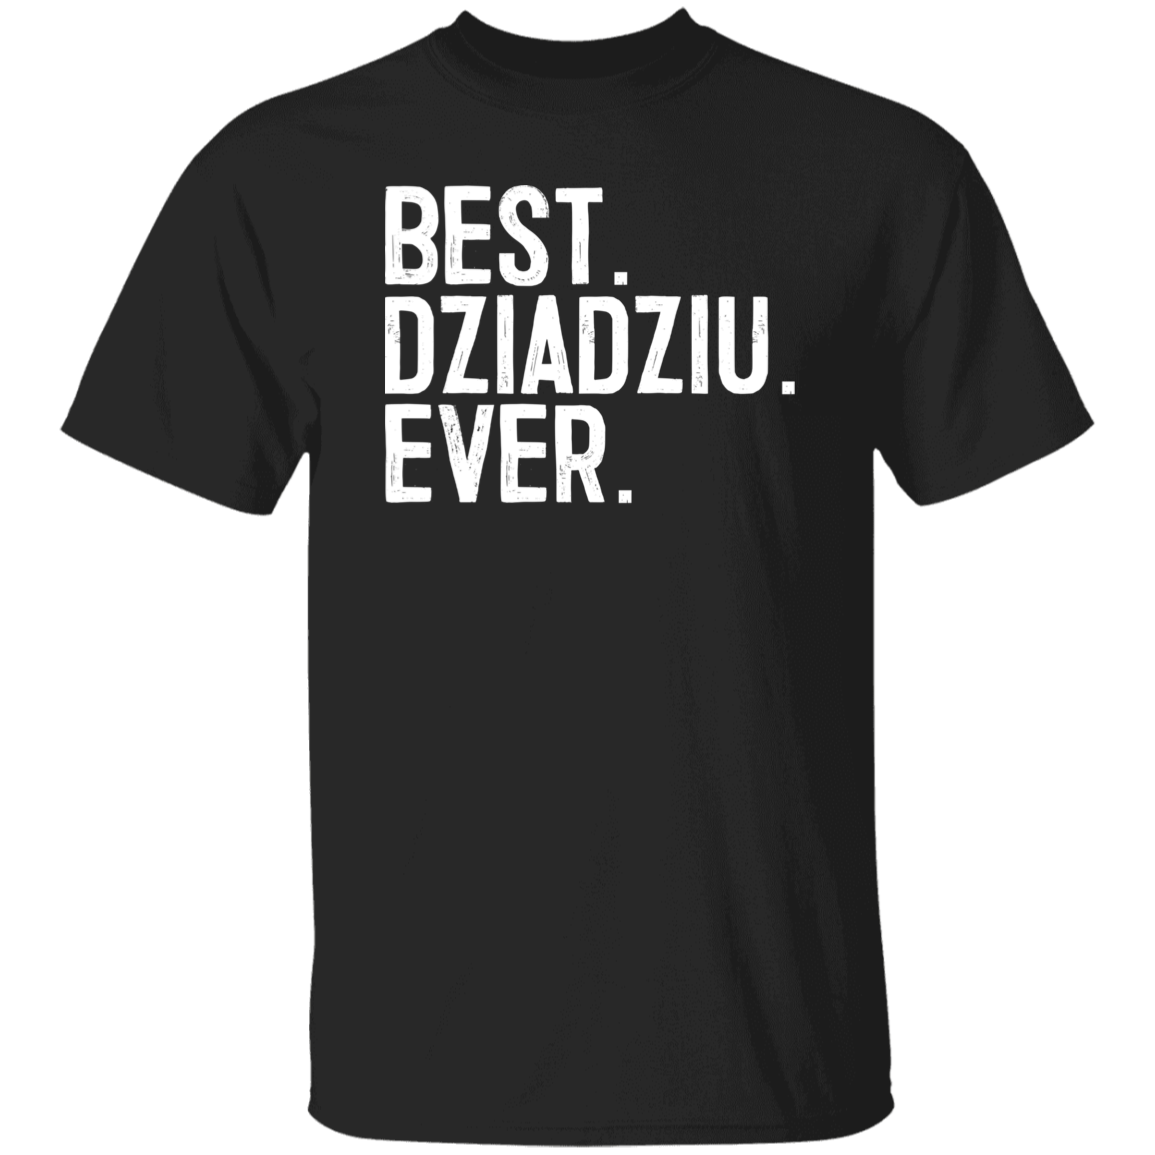 Best Dziadziu Ever Apparel CustomCat G500 5.3 oz. T-Shirt Black S